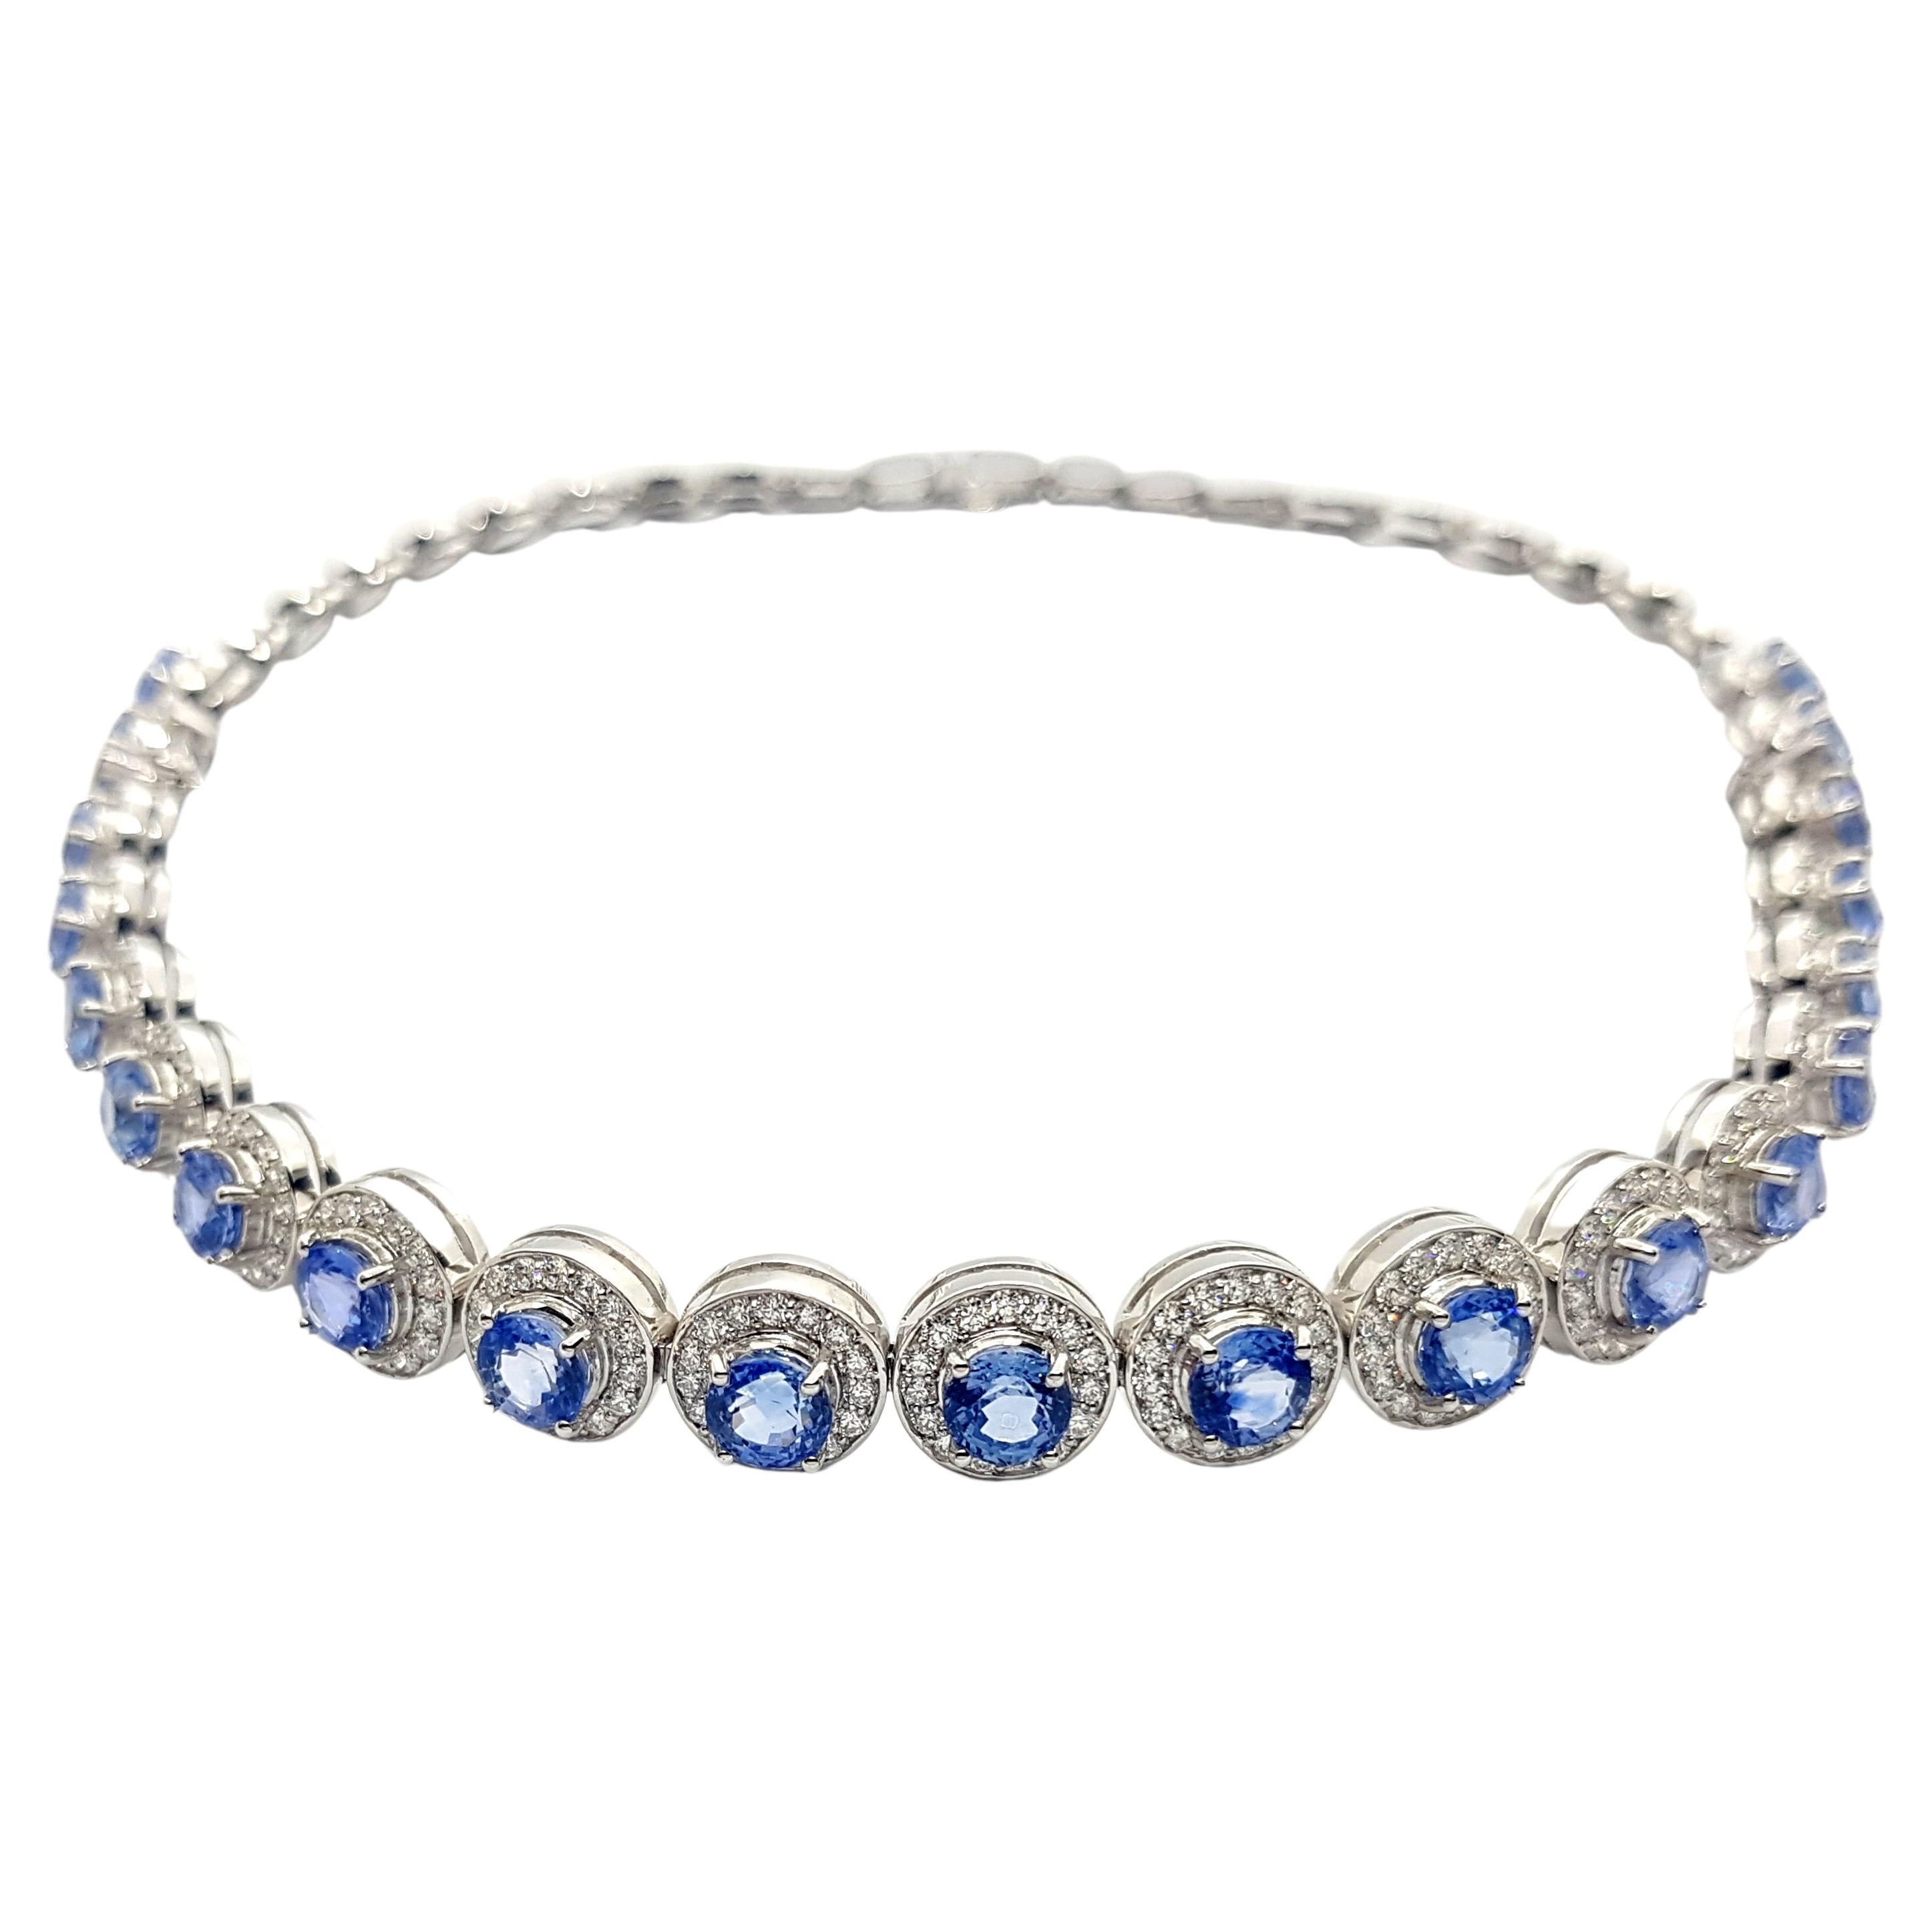 Collier choker/bracelet convertible en or blanc 18 carats avec saphir bleu et diamants